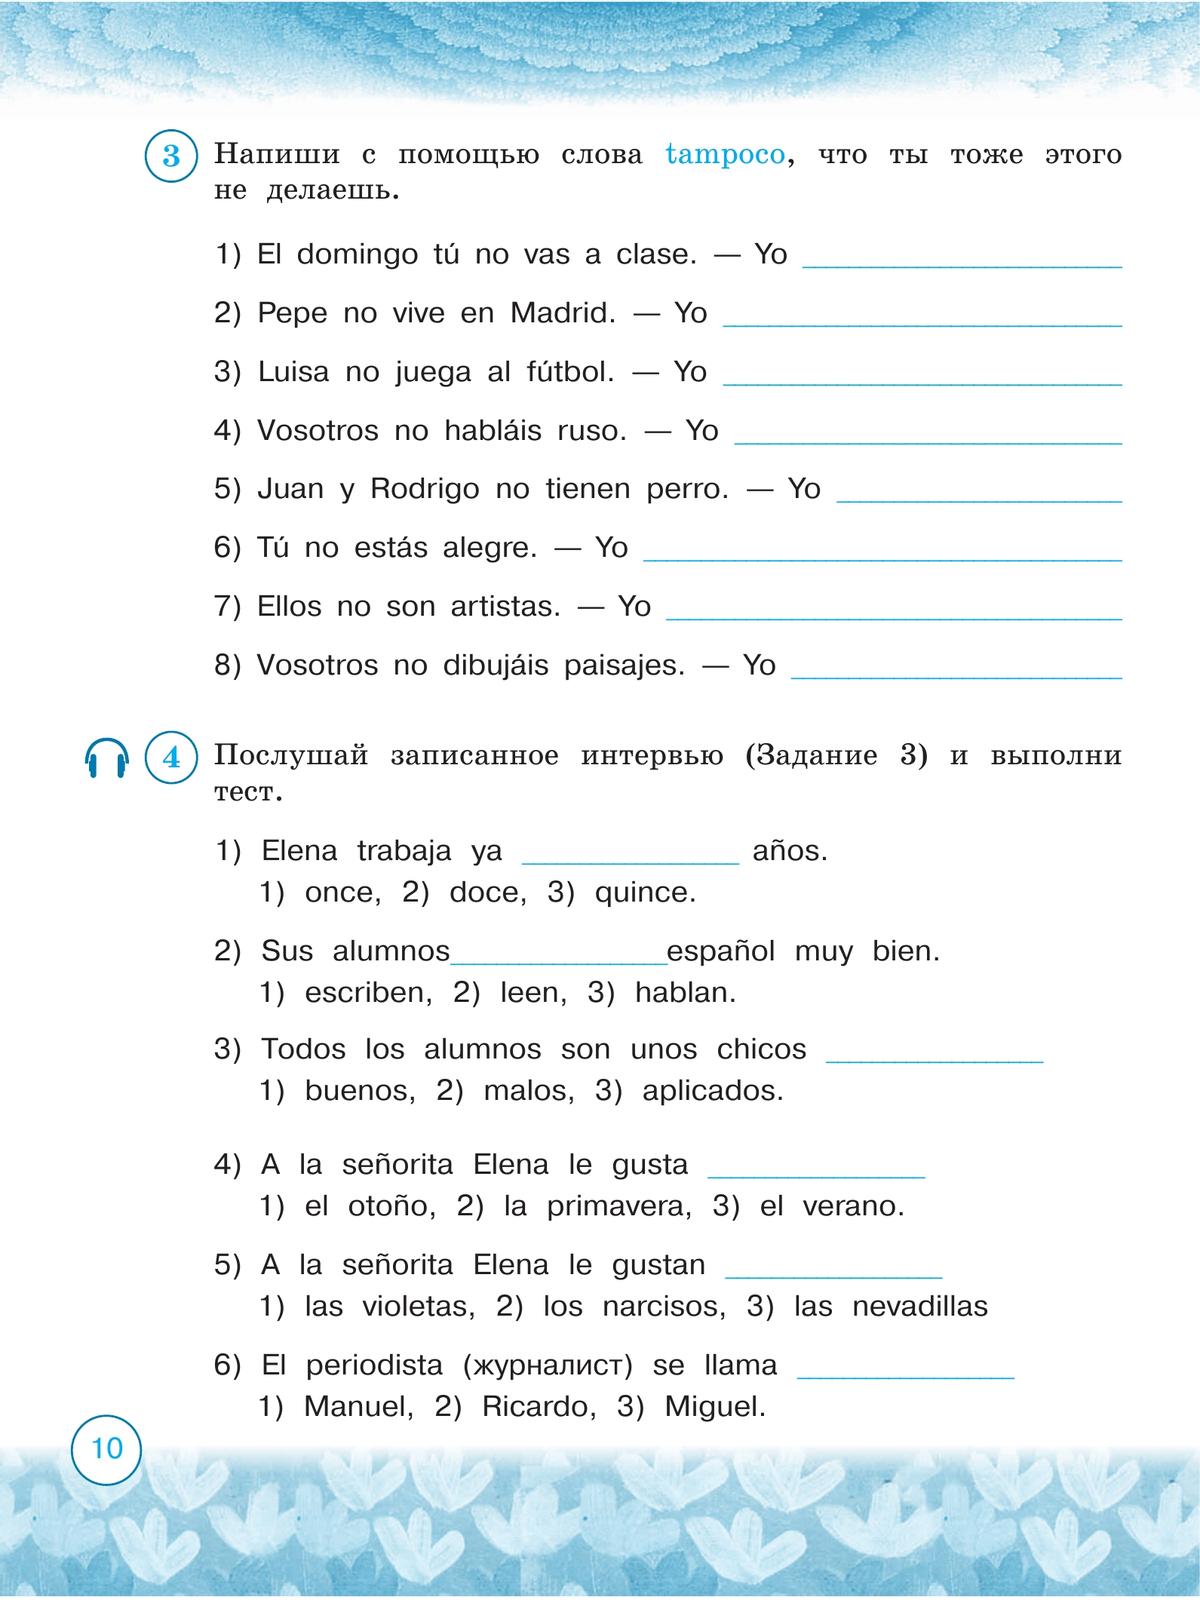 Испанский язык. Рабочая тетрадь. 3 класс. Углублённое изучение 4